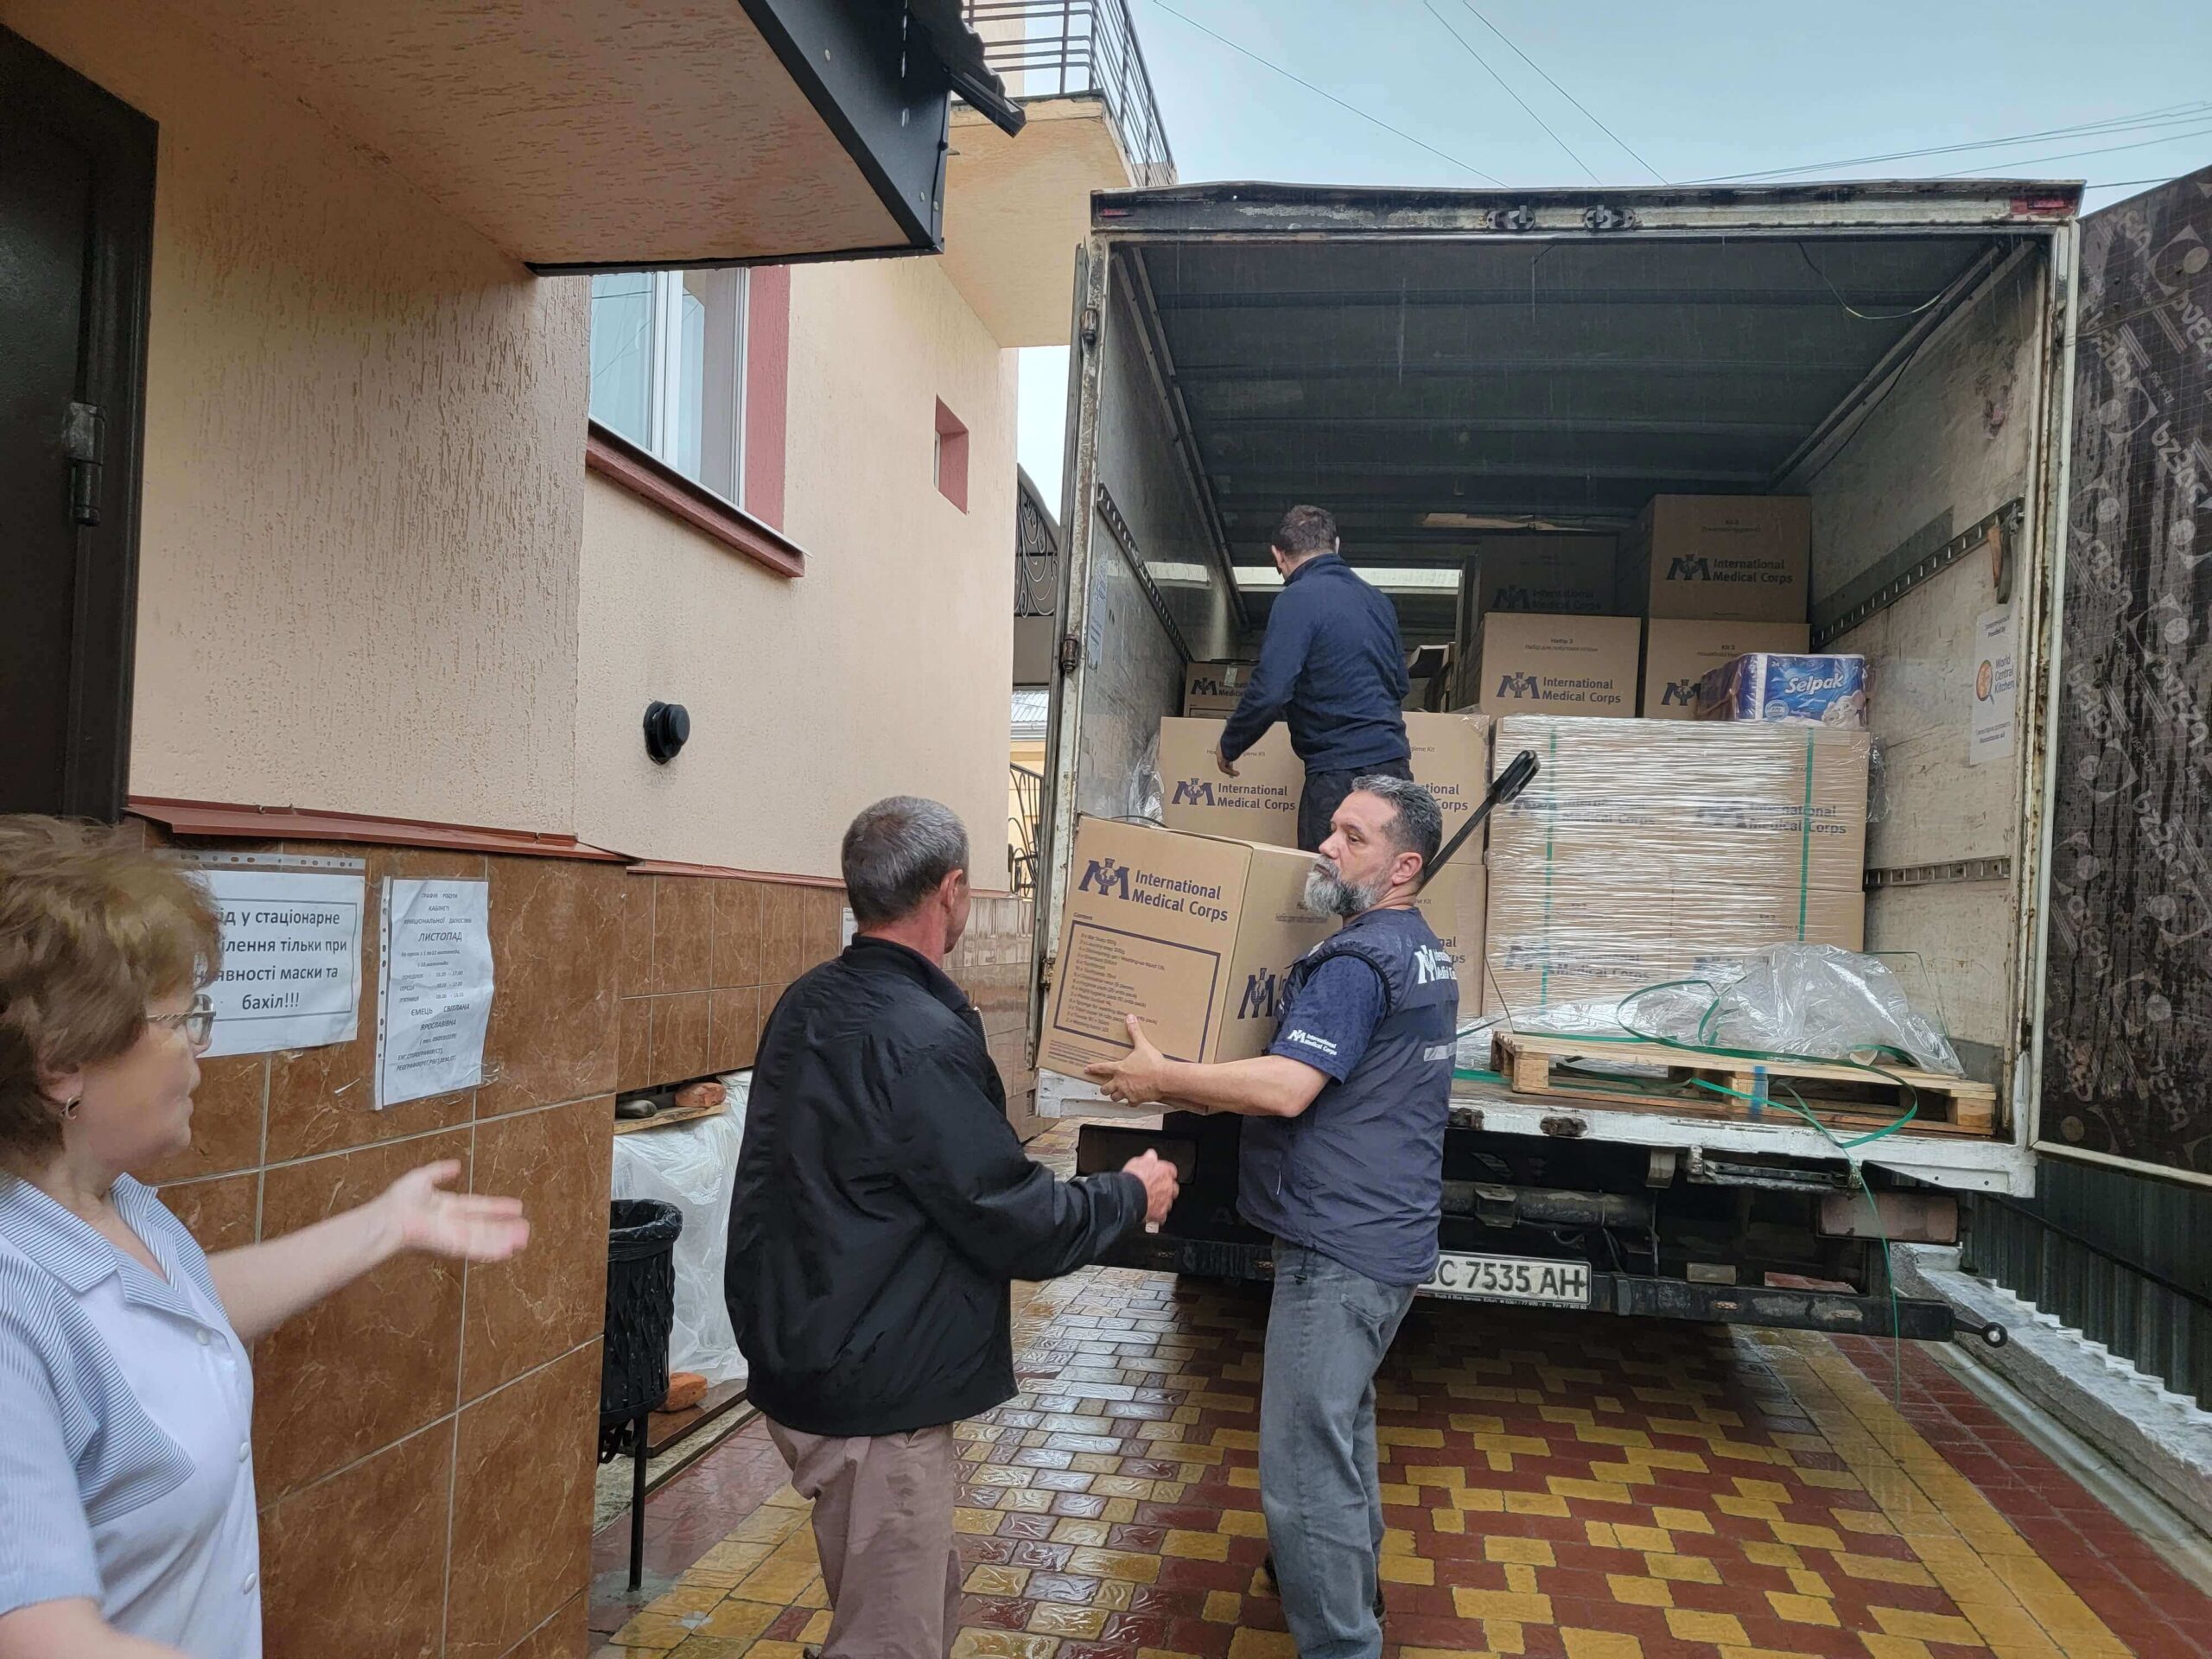 Delivering medical supplies in Ukraine.